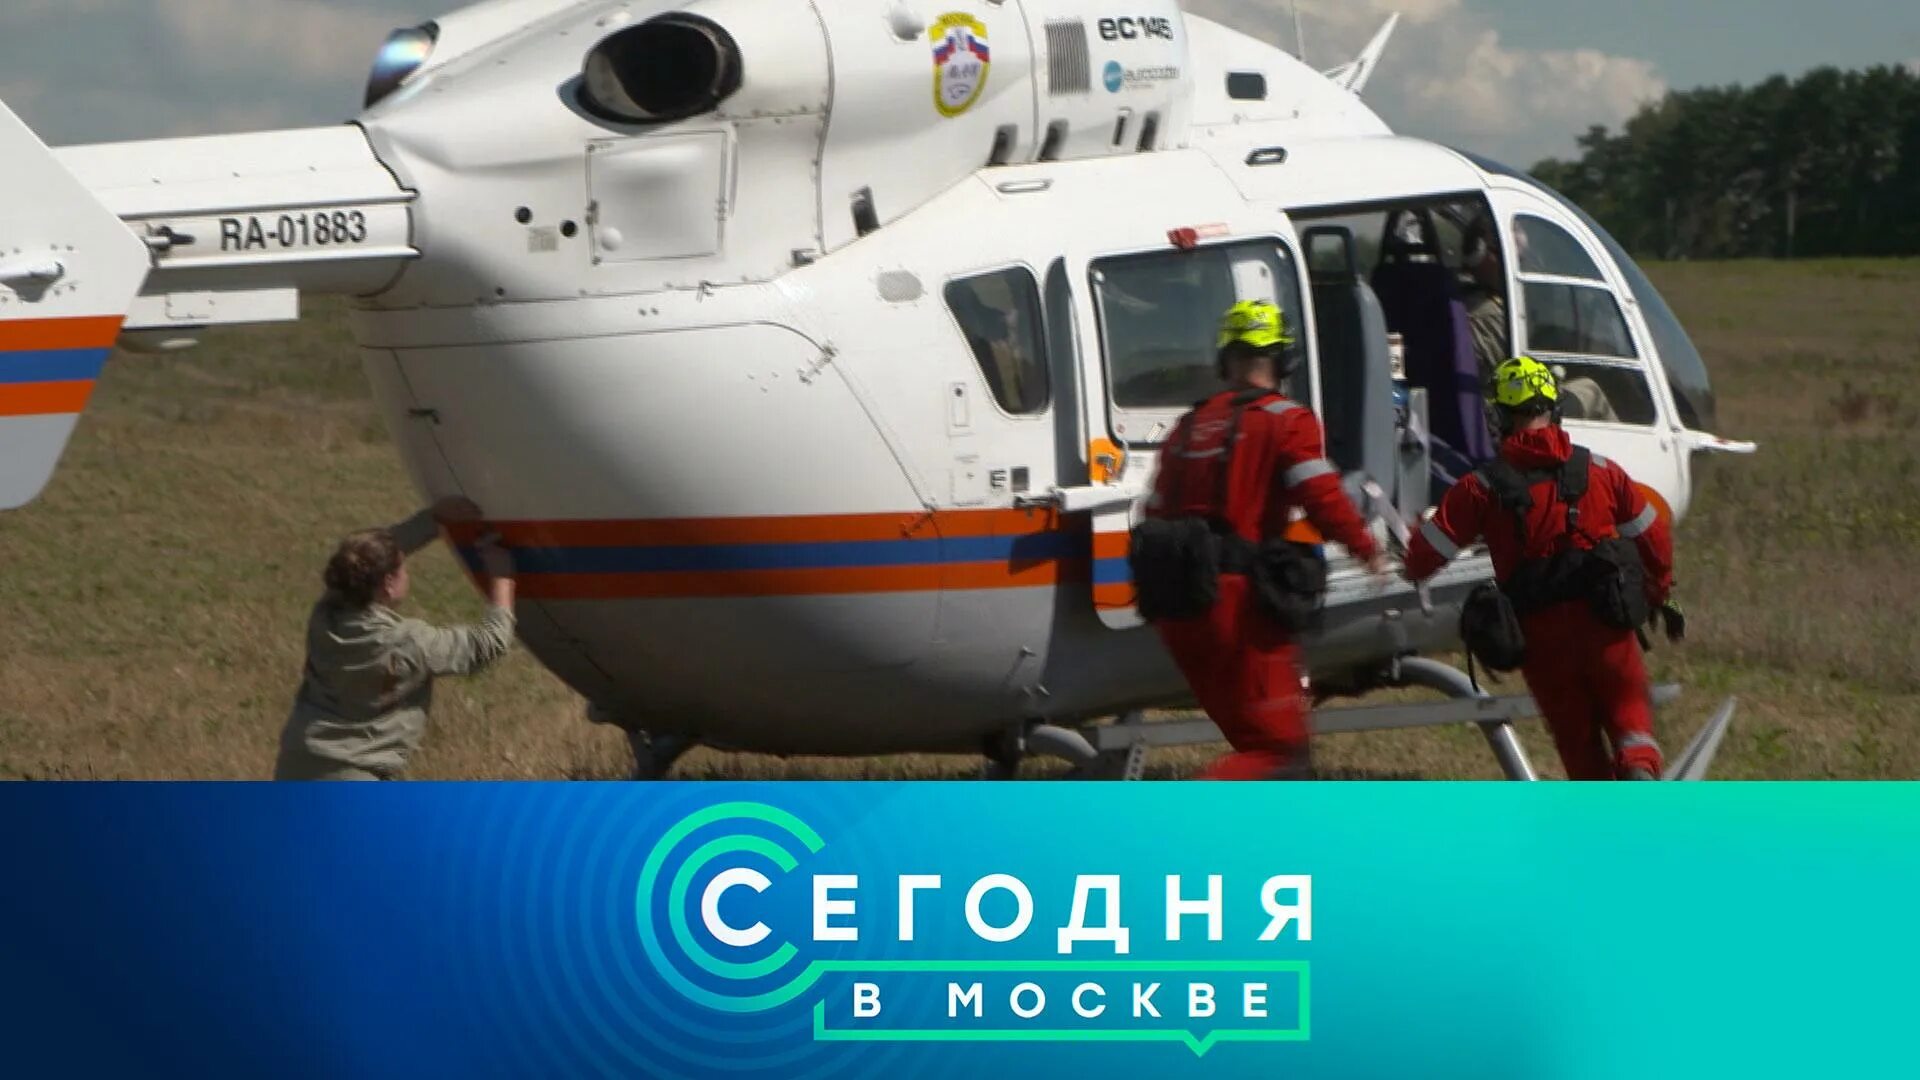 В москве в августе 2022 годах. Экскурсия на вертолете. Вертолеты санавиации в Москве и Московской области. Вертолетная площадка.